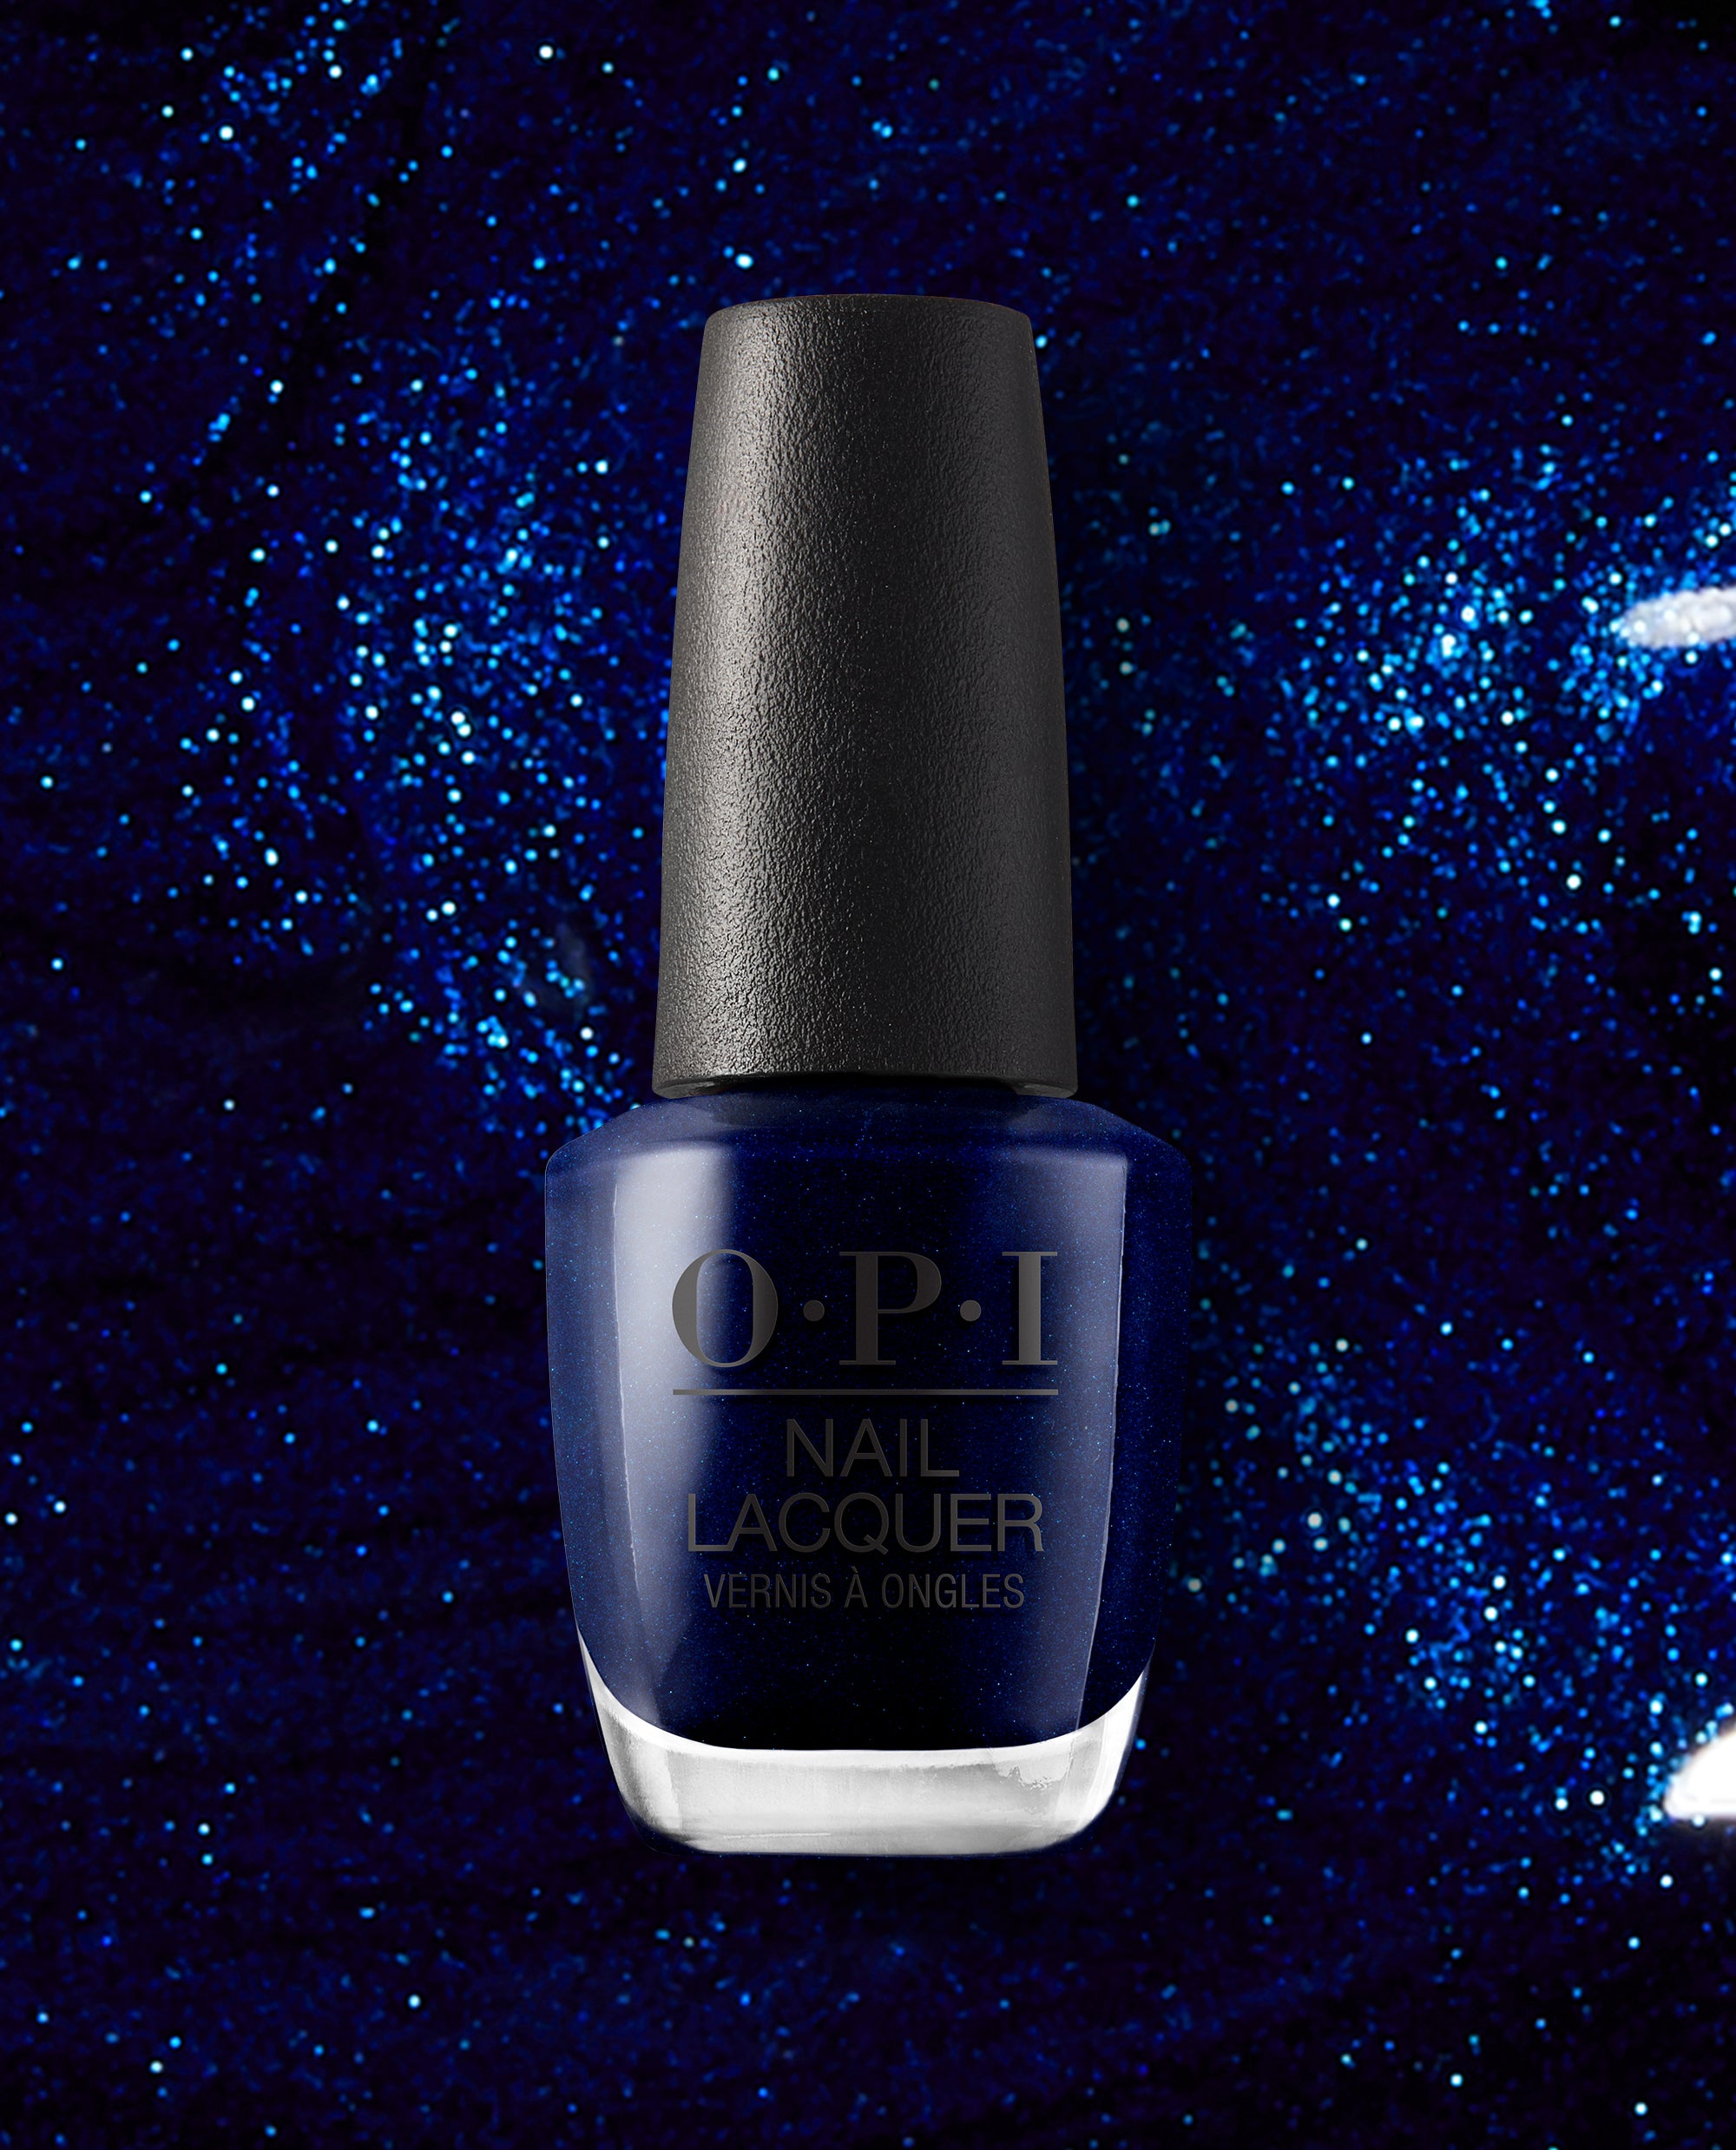 opi blue nail polish names